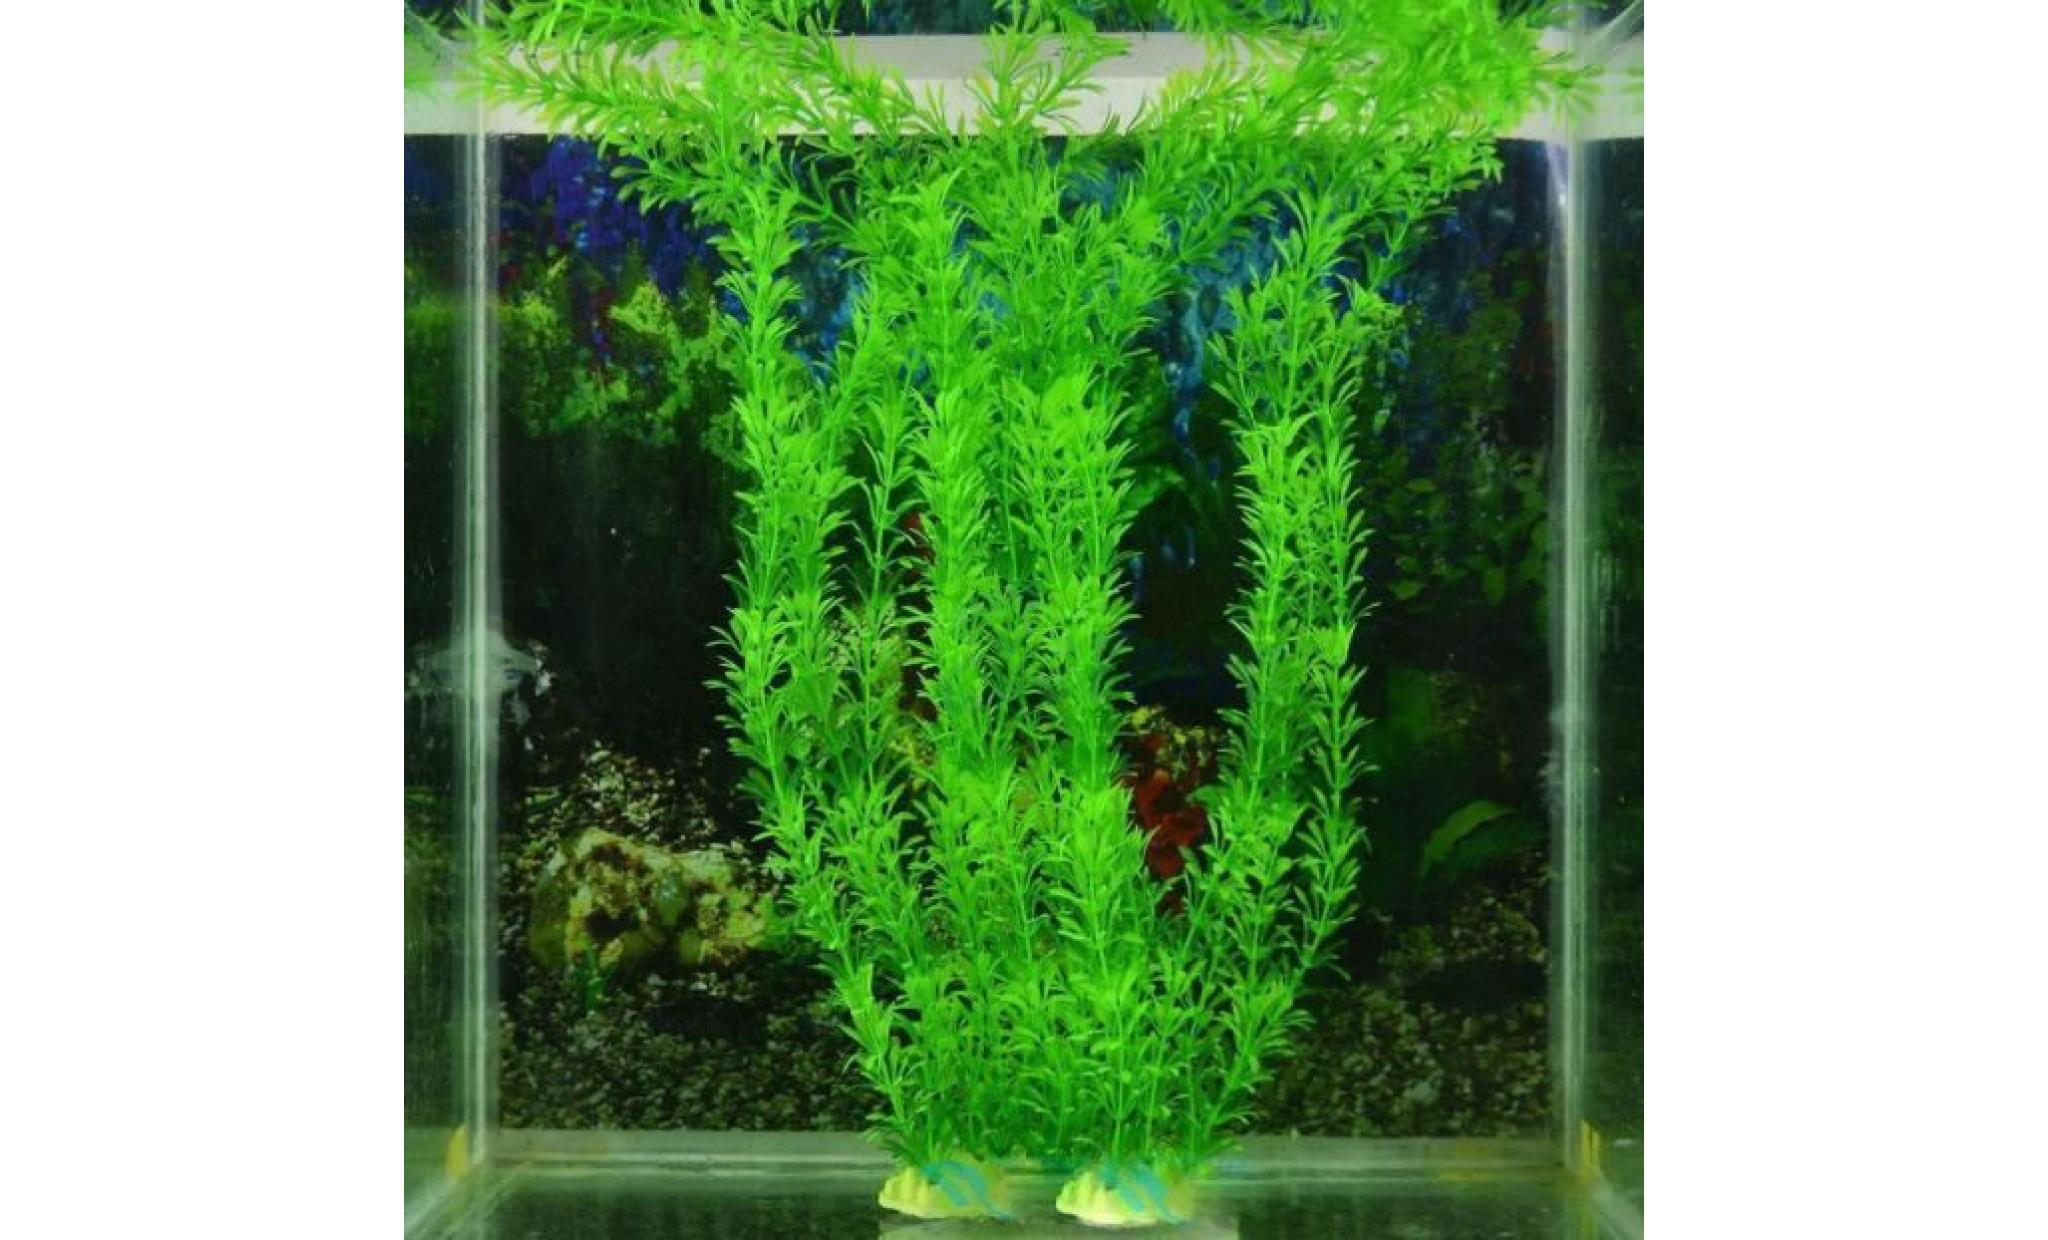 livraison gratuite 13 plastique gazon artificiel réservoir de poissons d'eau décoration @zoozipo77